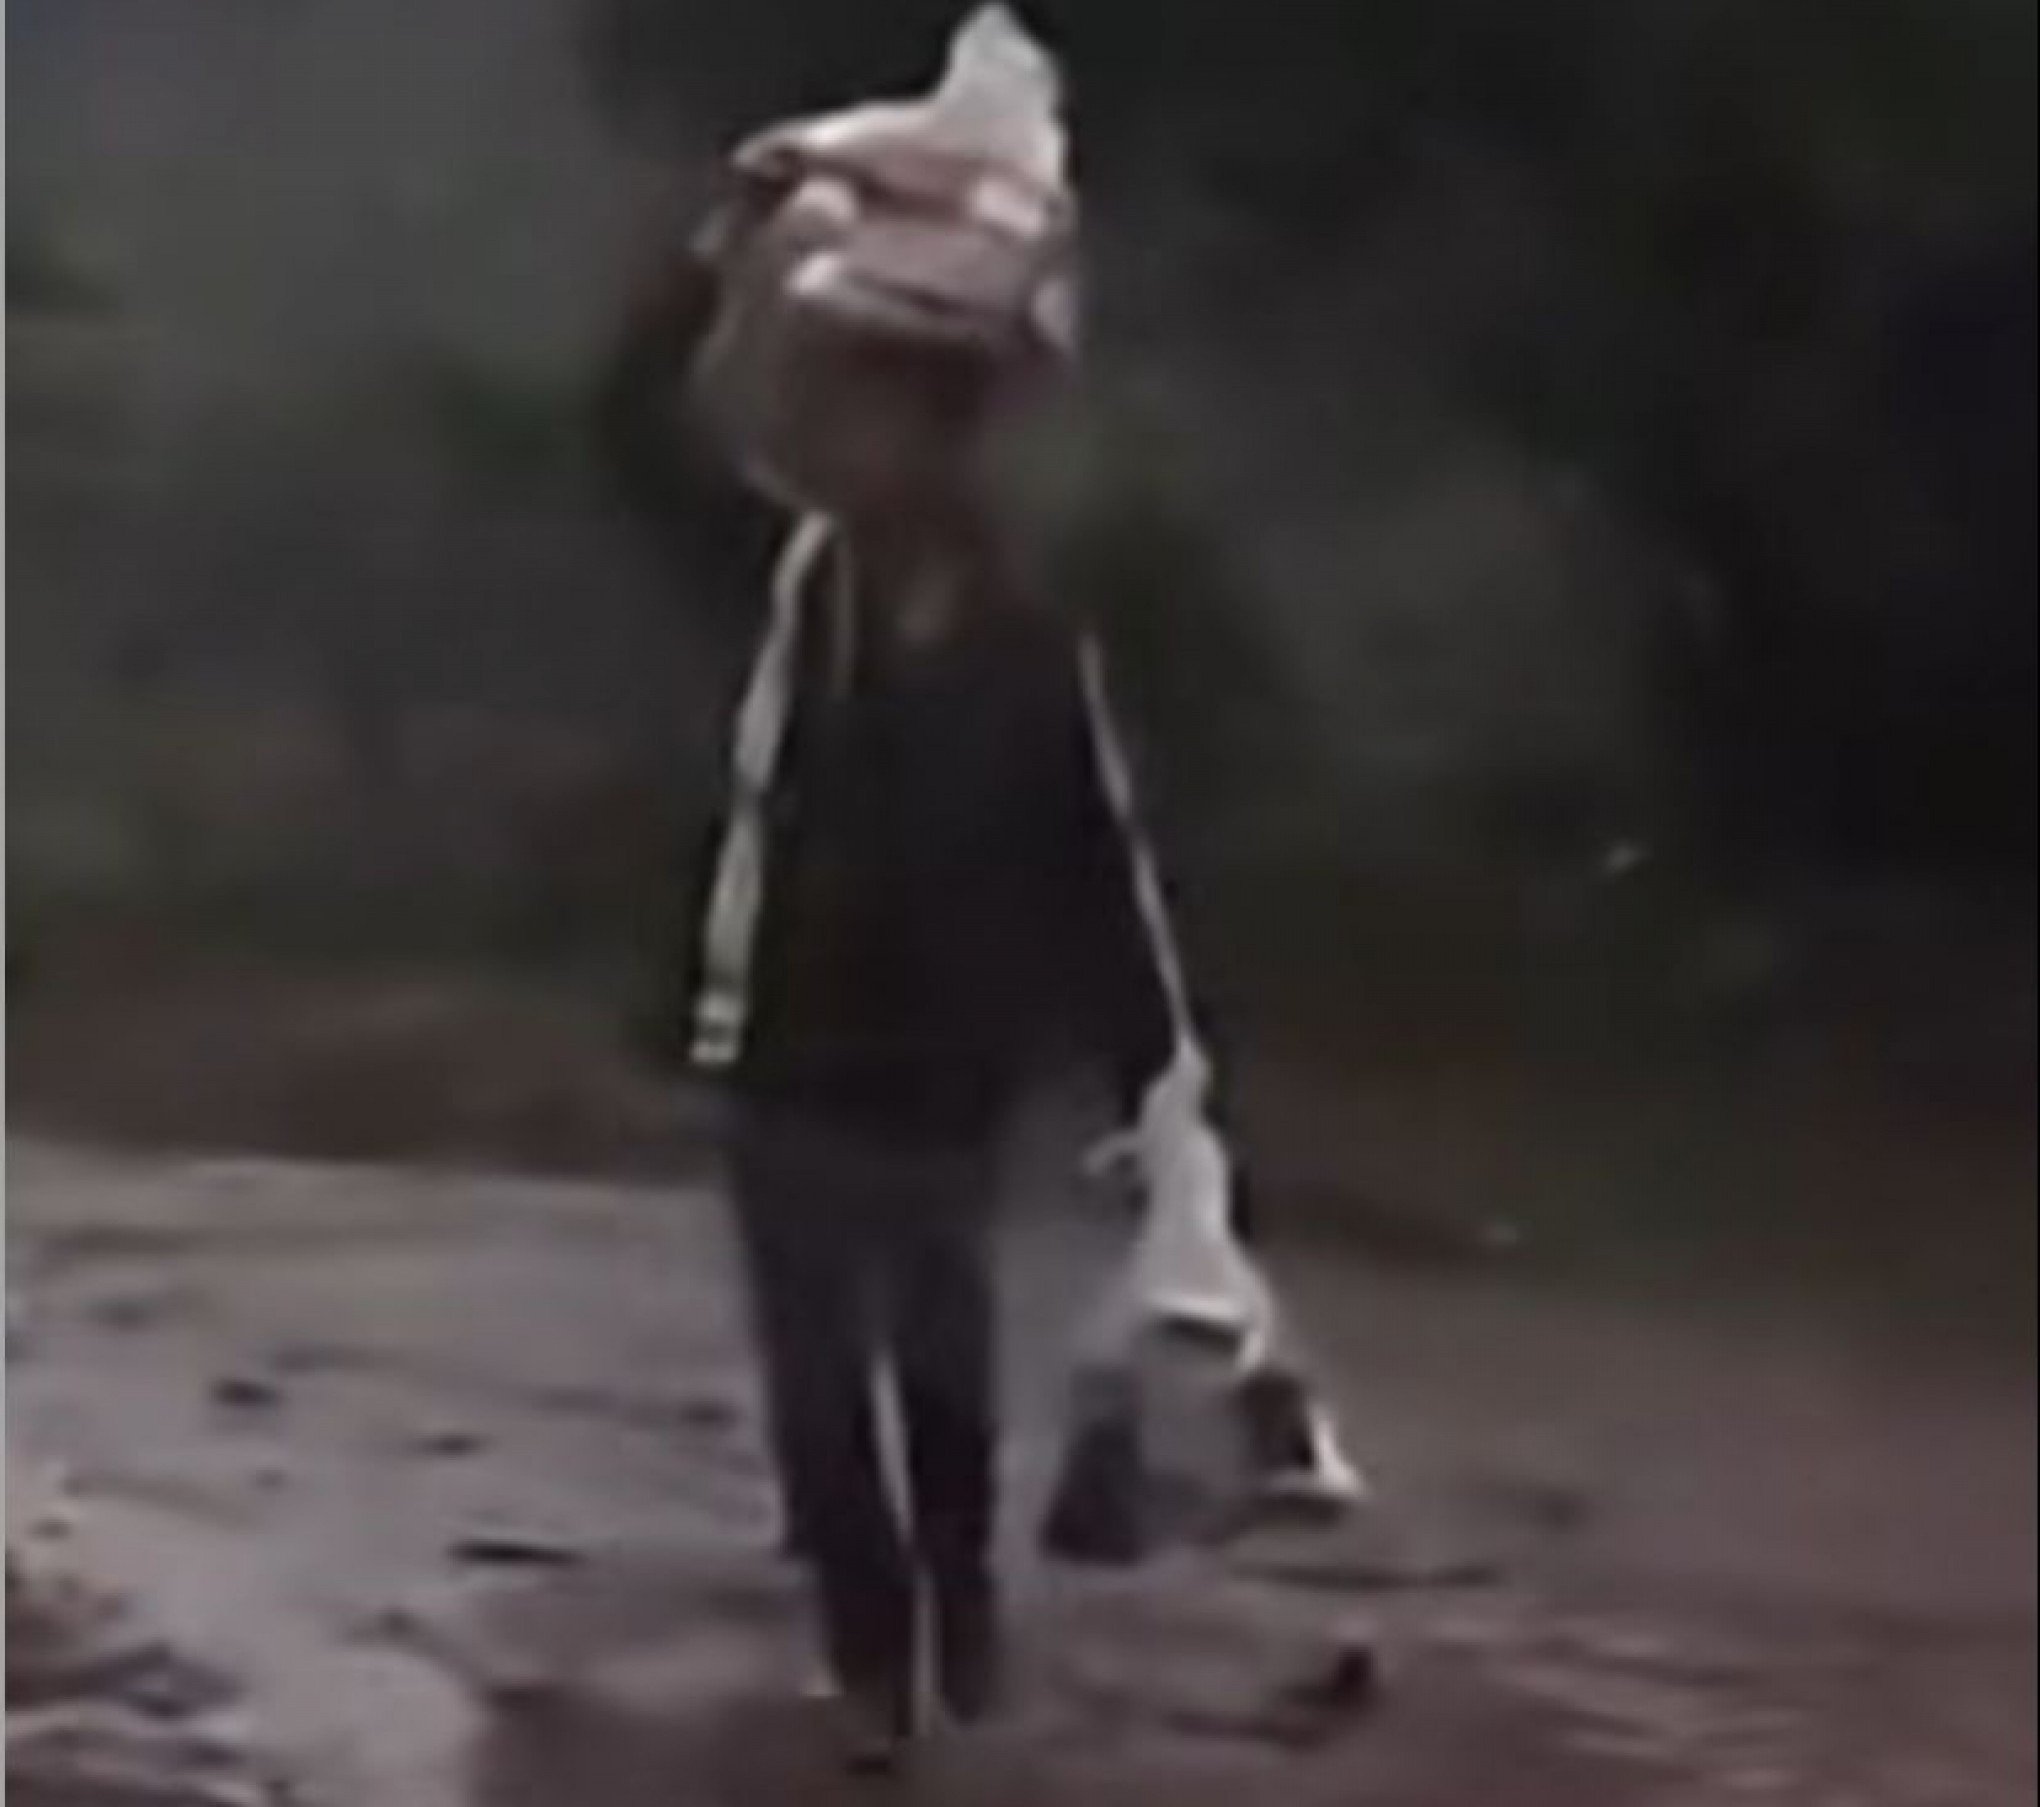 CATÁSTROFE NO RS: Menino de 11 anos filma pai voltando com doações abaixo de chuva e emociona internautas; veja vídeo